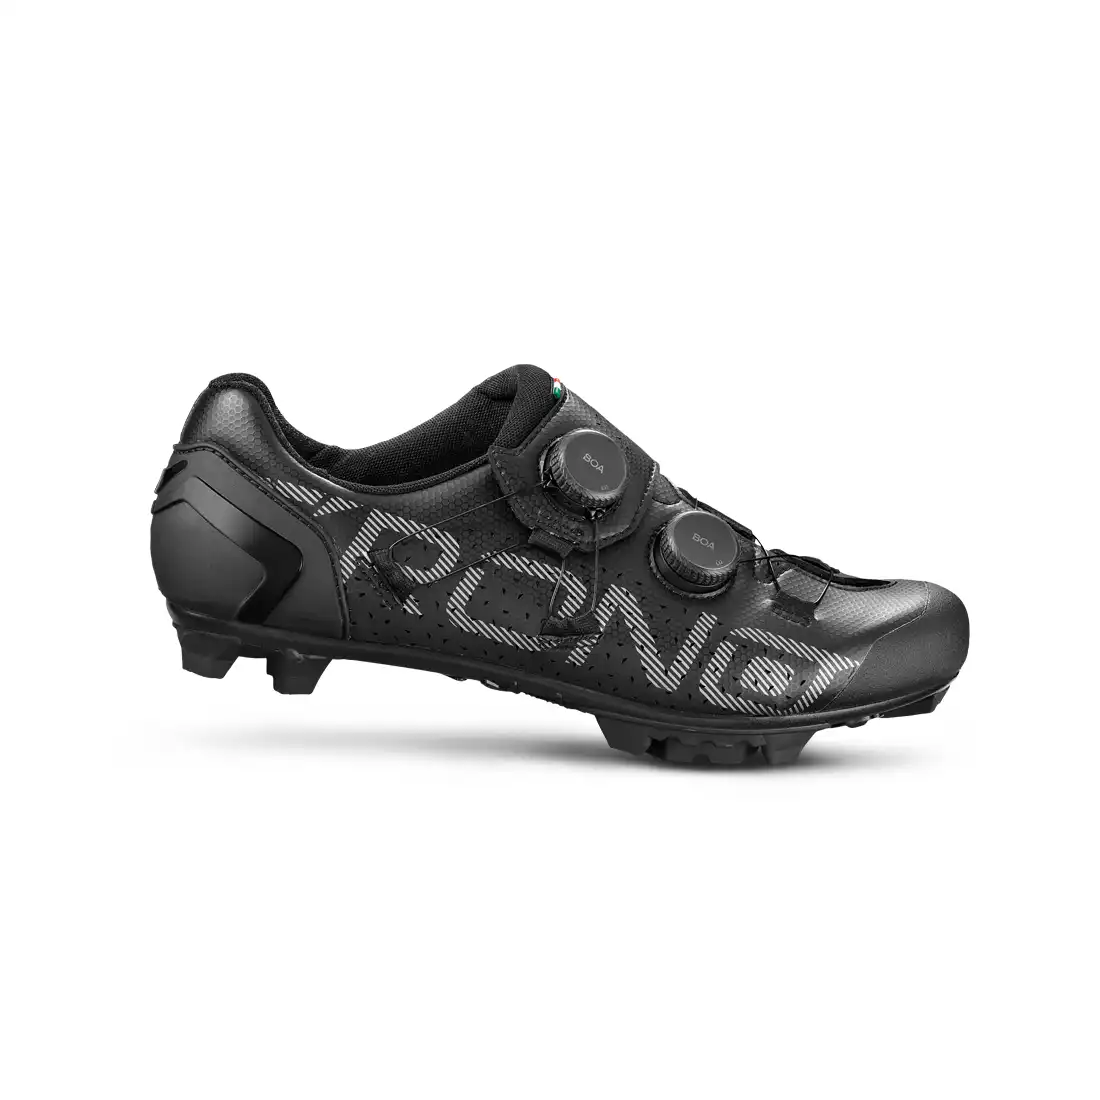 CRONO CX-1 buty rowerowe MTB czarne